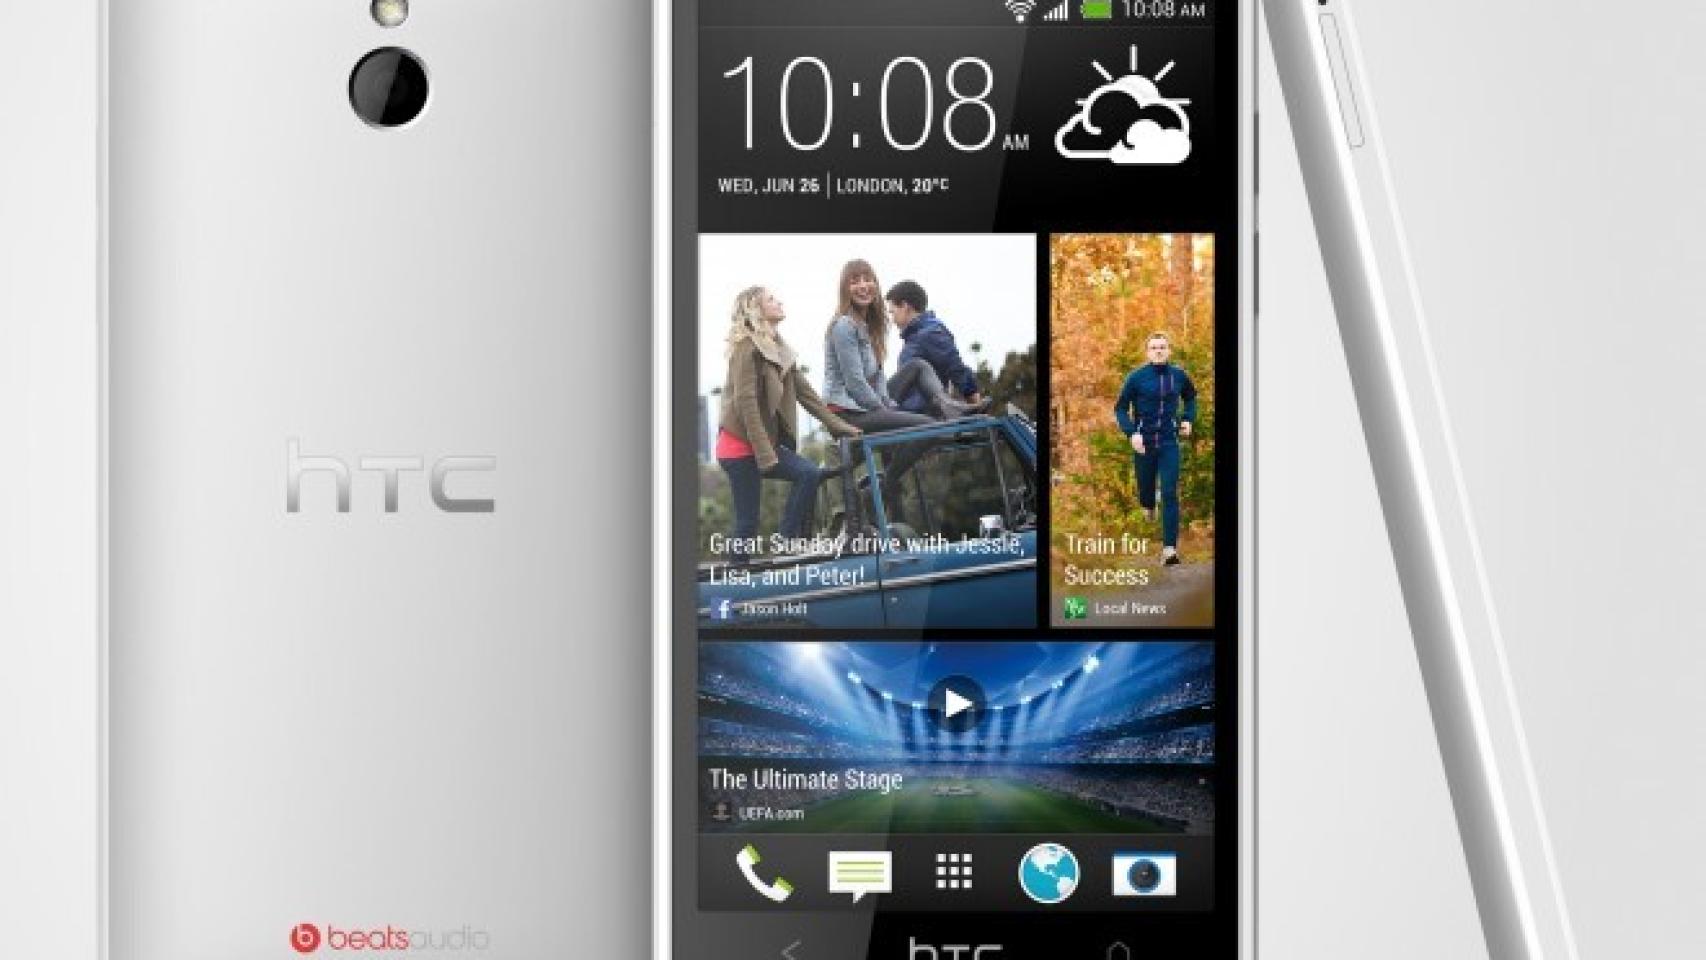 HTC One Mini, con 4.3 pulgadas, resolución 720p y cámara Ultrapixel